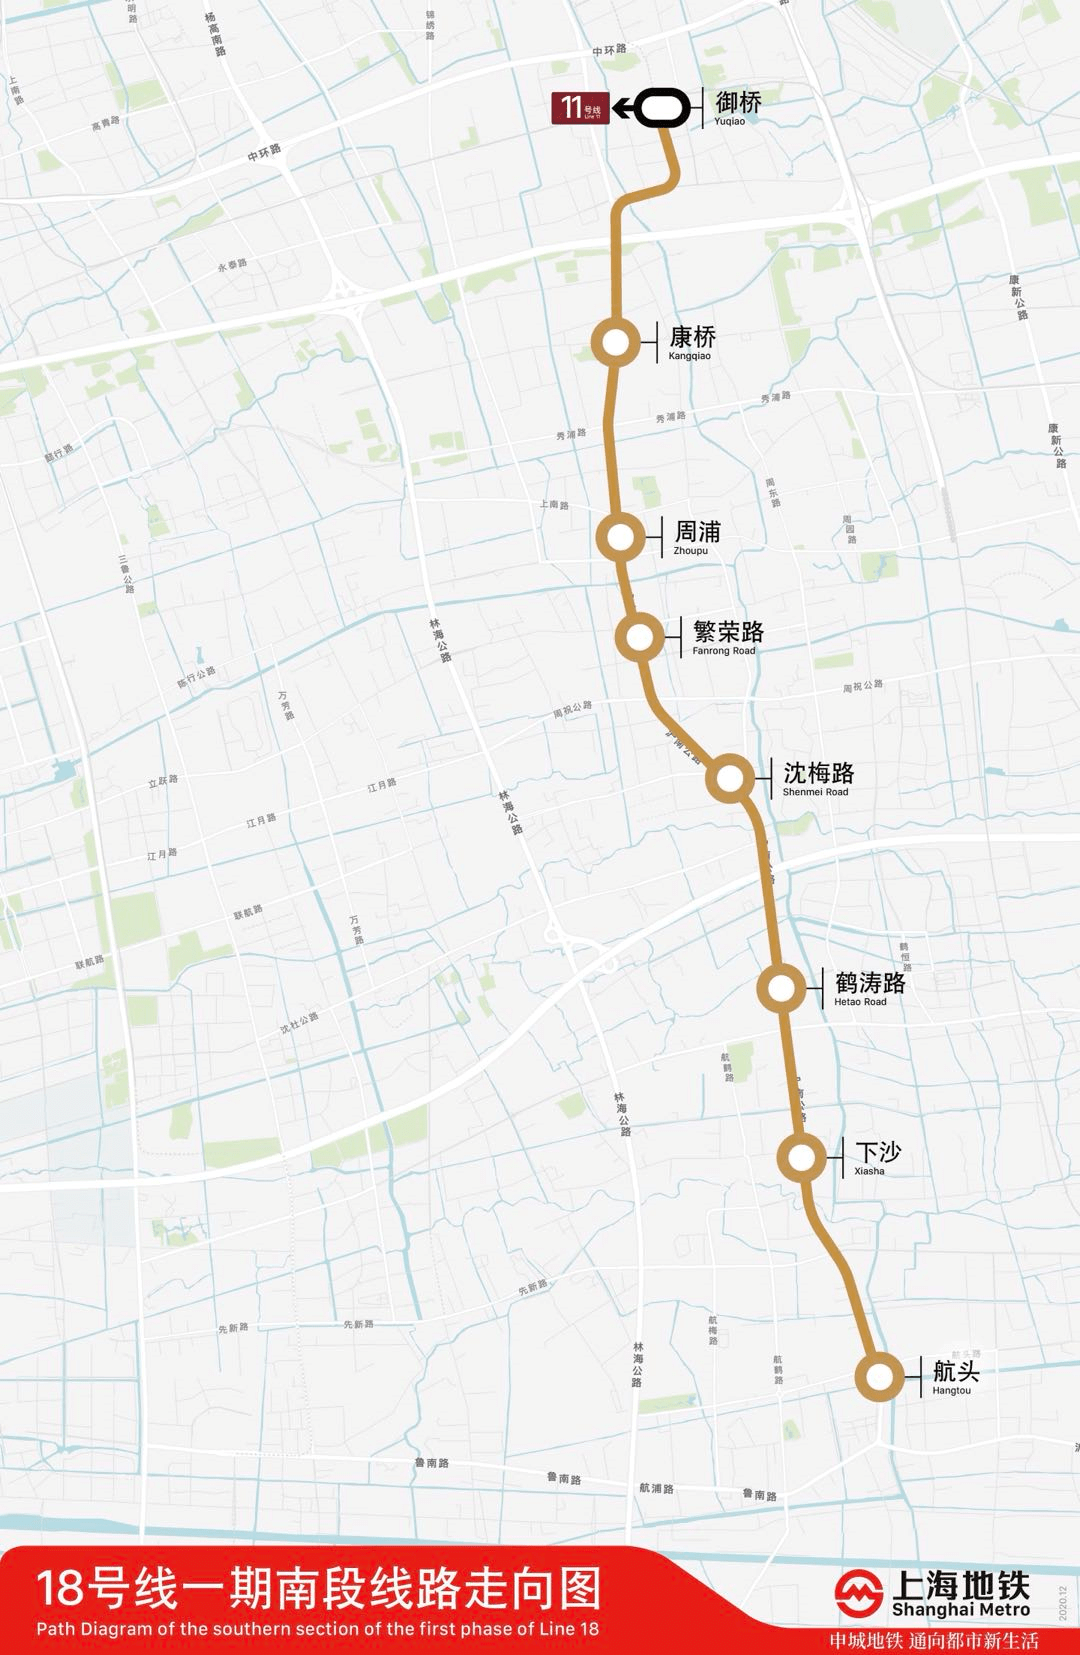 繁荣路站,周浦站,康桥站,御桥站8座车站,其中御桥站与既有11号线换乘